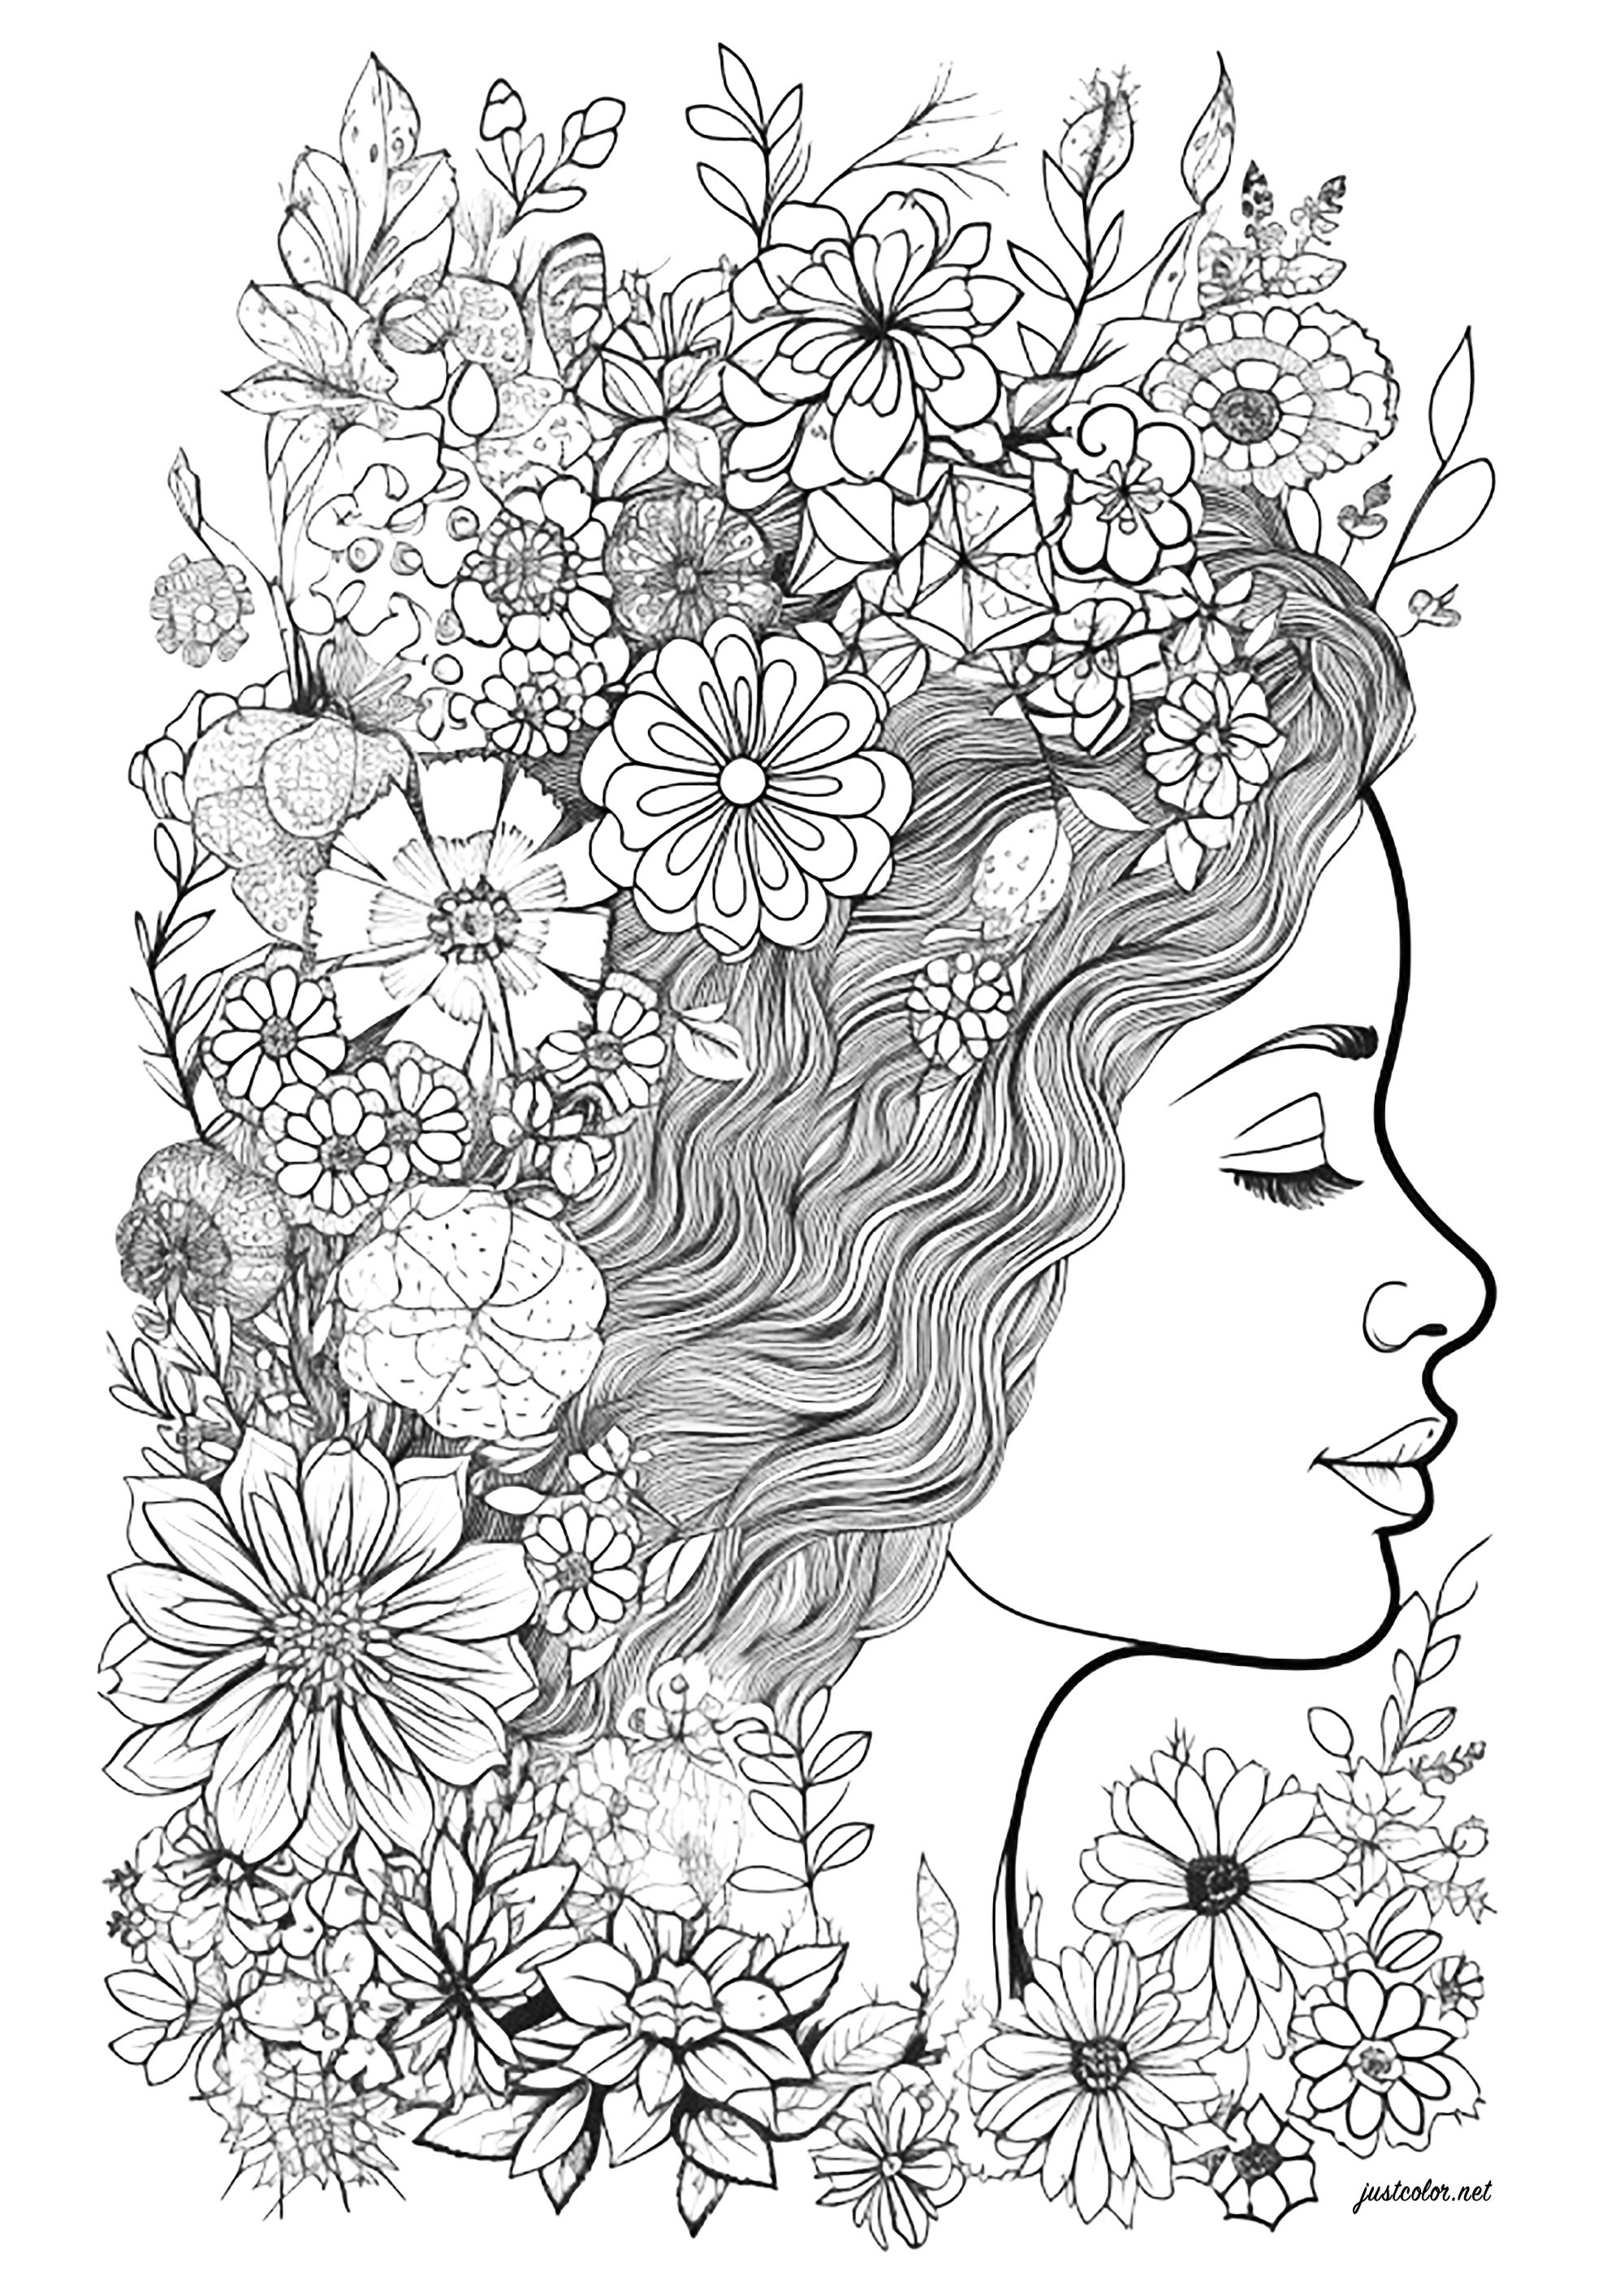 Visage de femme de profil, entouré de fleurs. Coloriez toutes ces belles fleurs dans la chevelure de cette femme